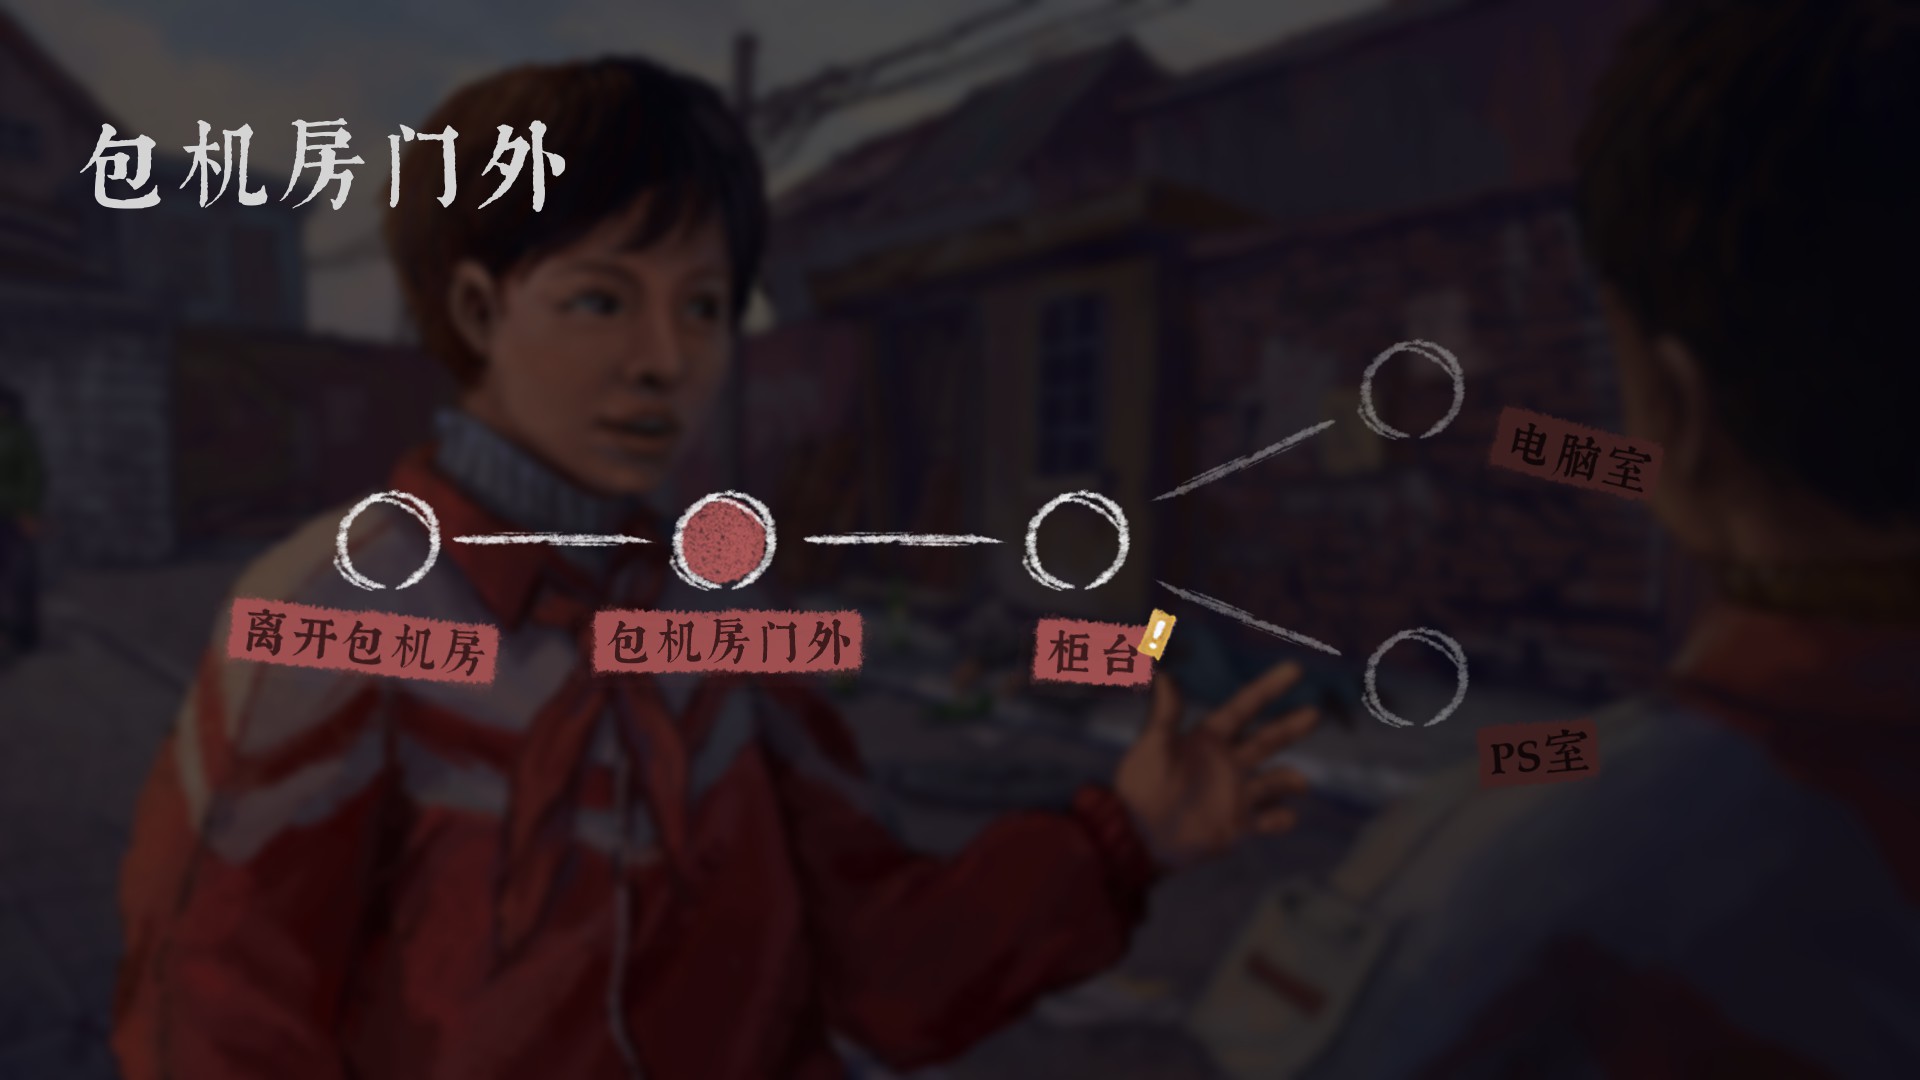 除開對話的選項，遊戲中還有各種主角可以選擇的行動。